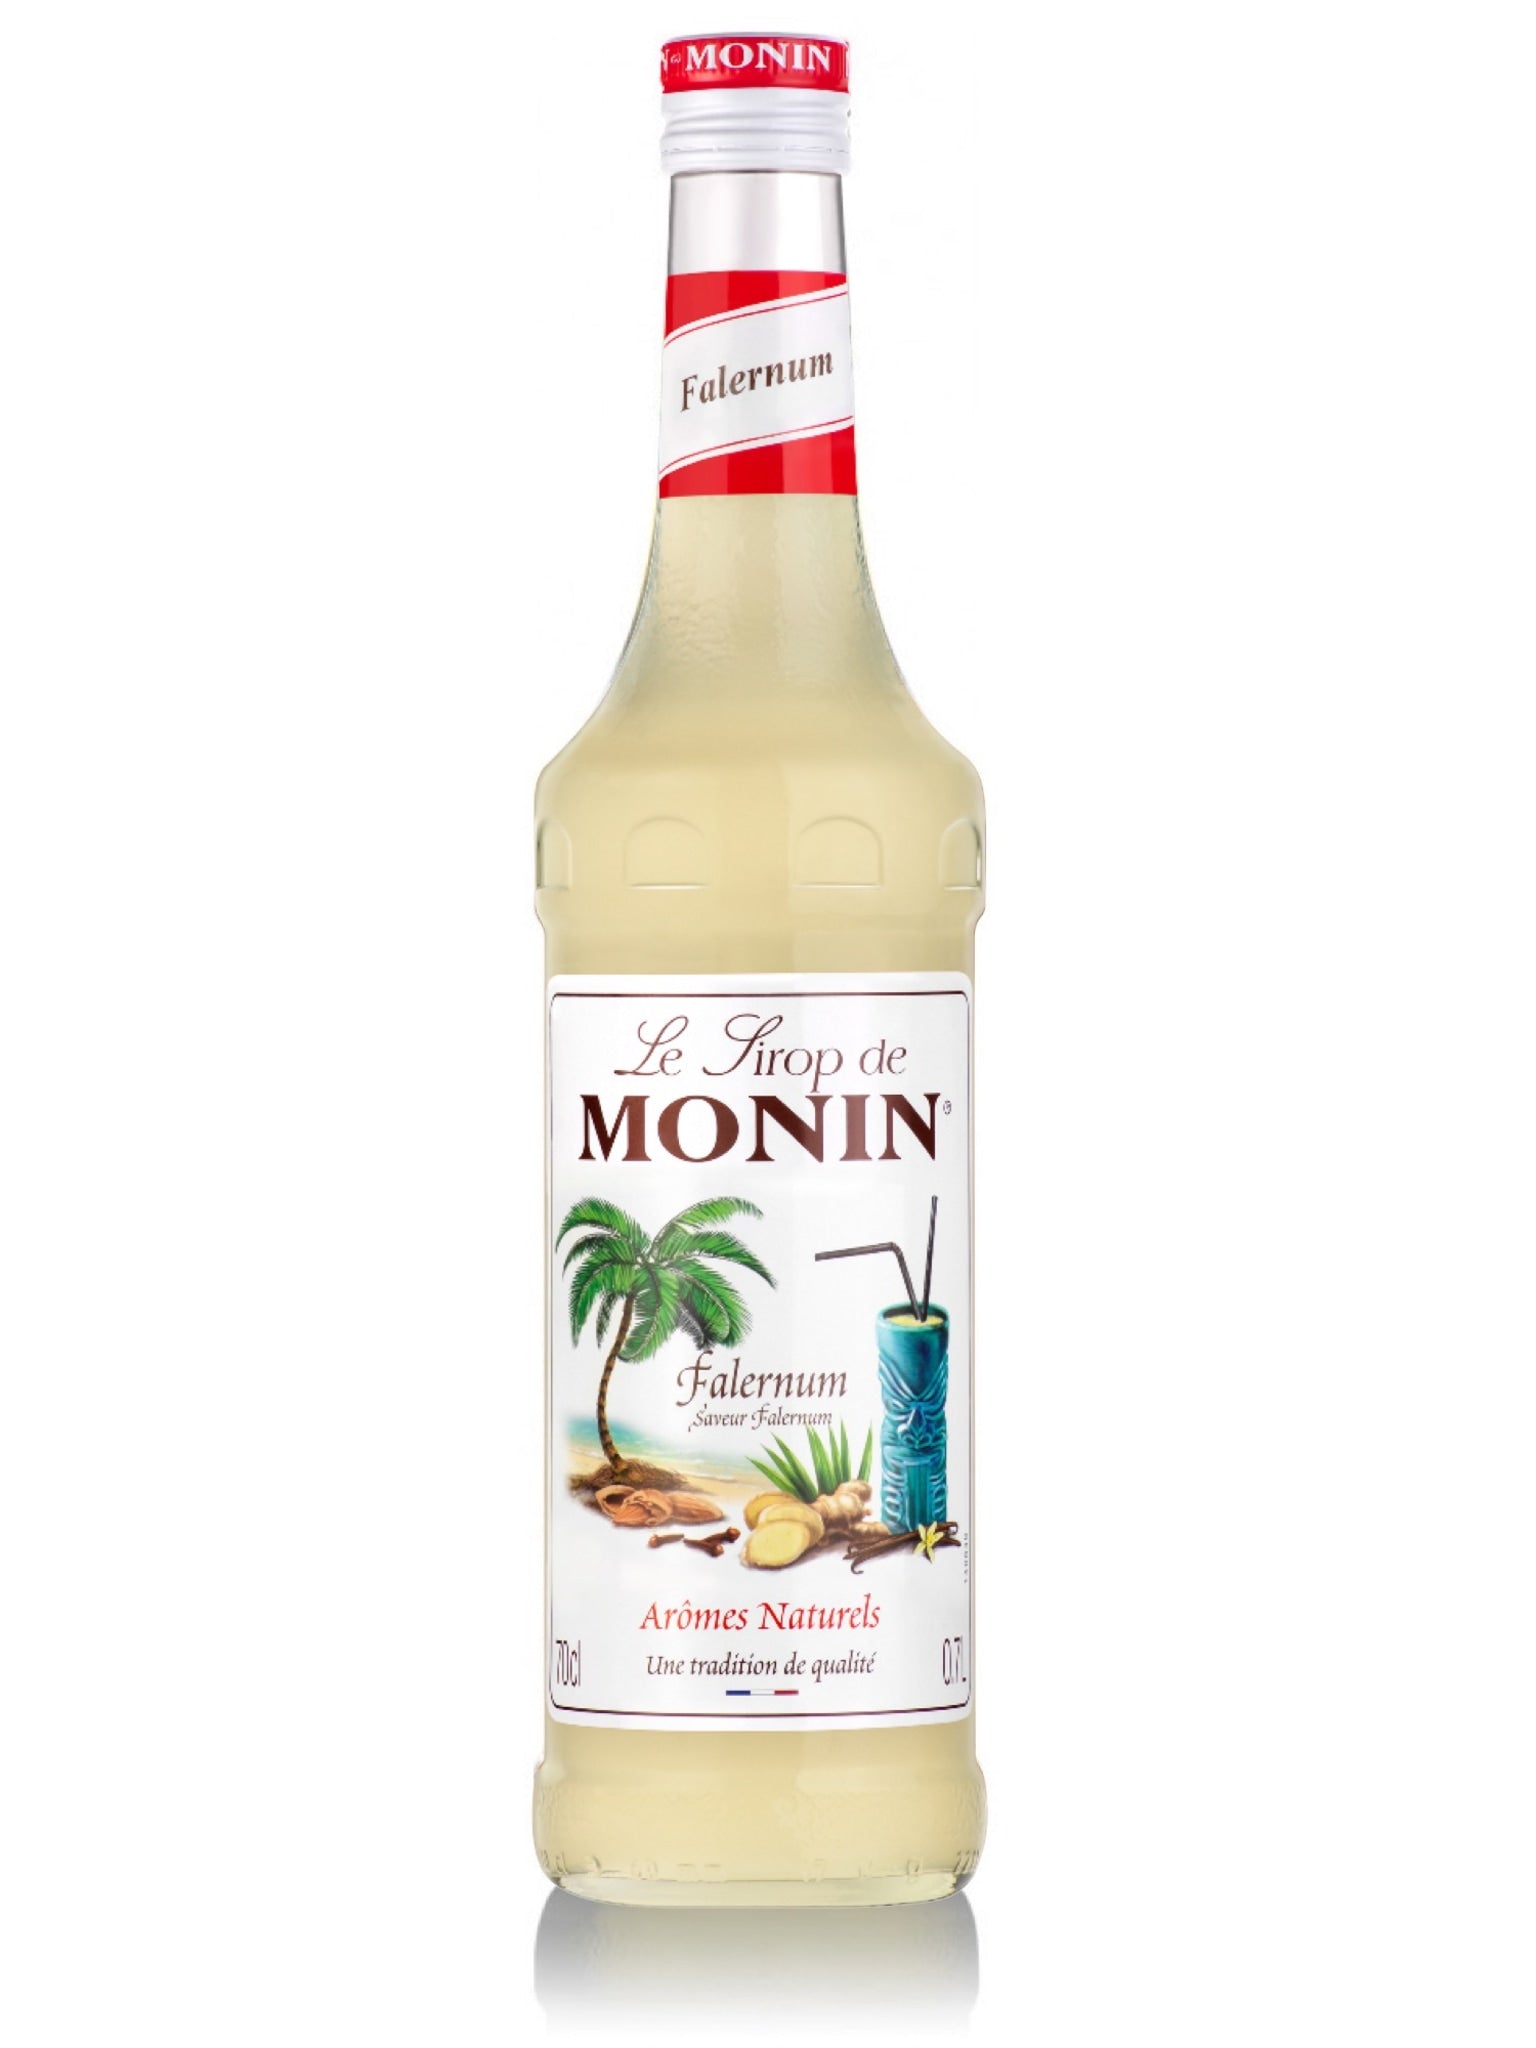 Prøv Monin Falernum Sirup for en karibisk twist til dine tiki-drikke og cocktails